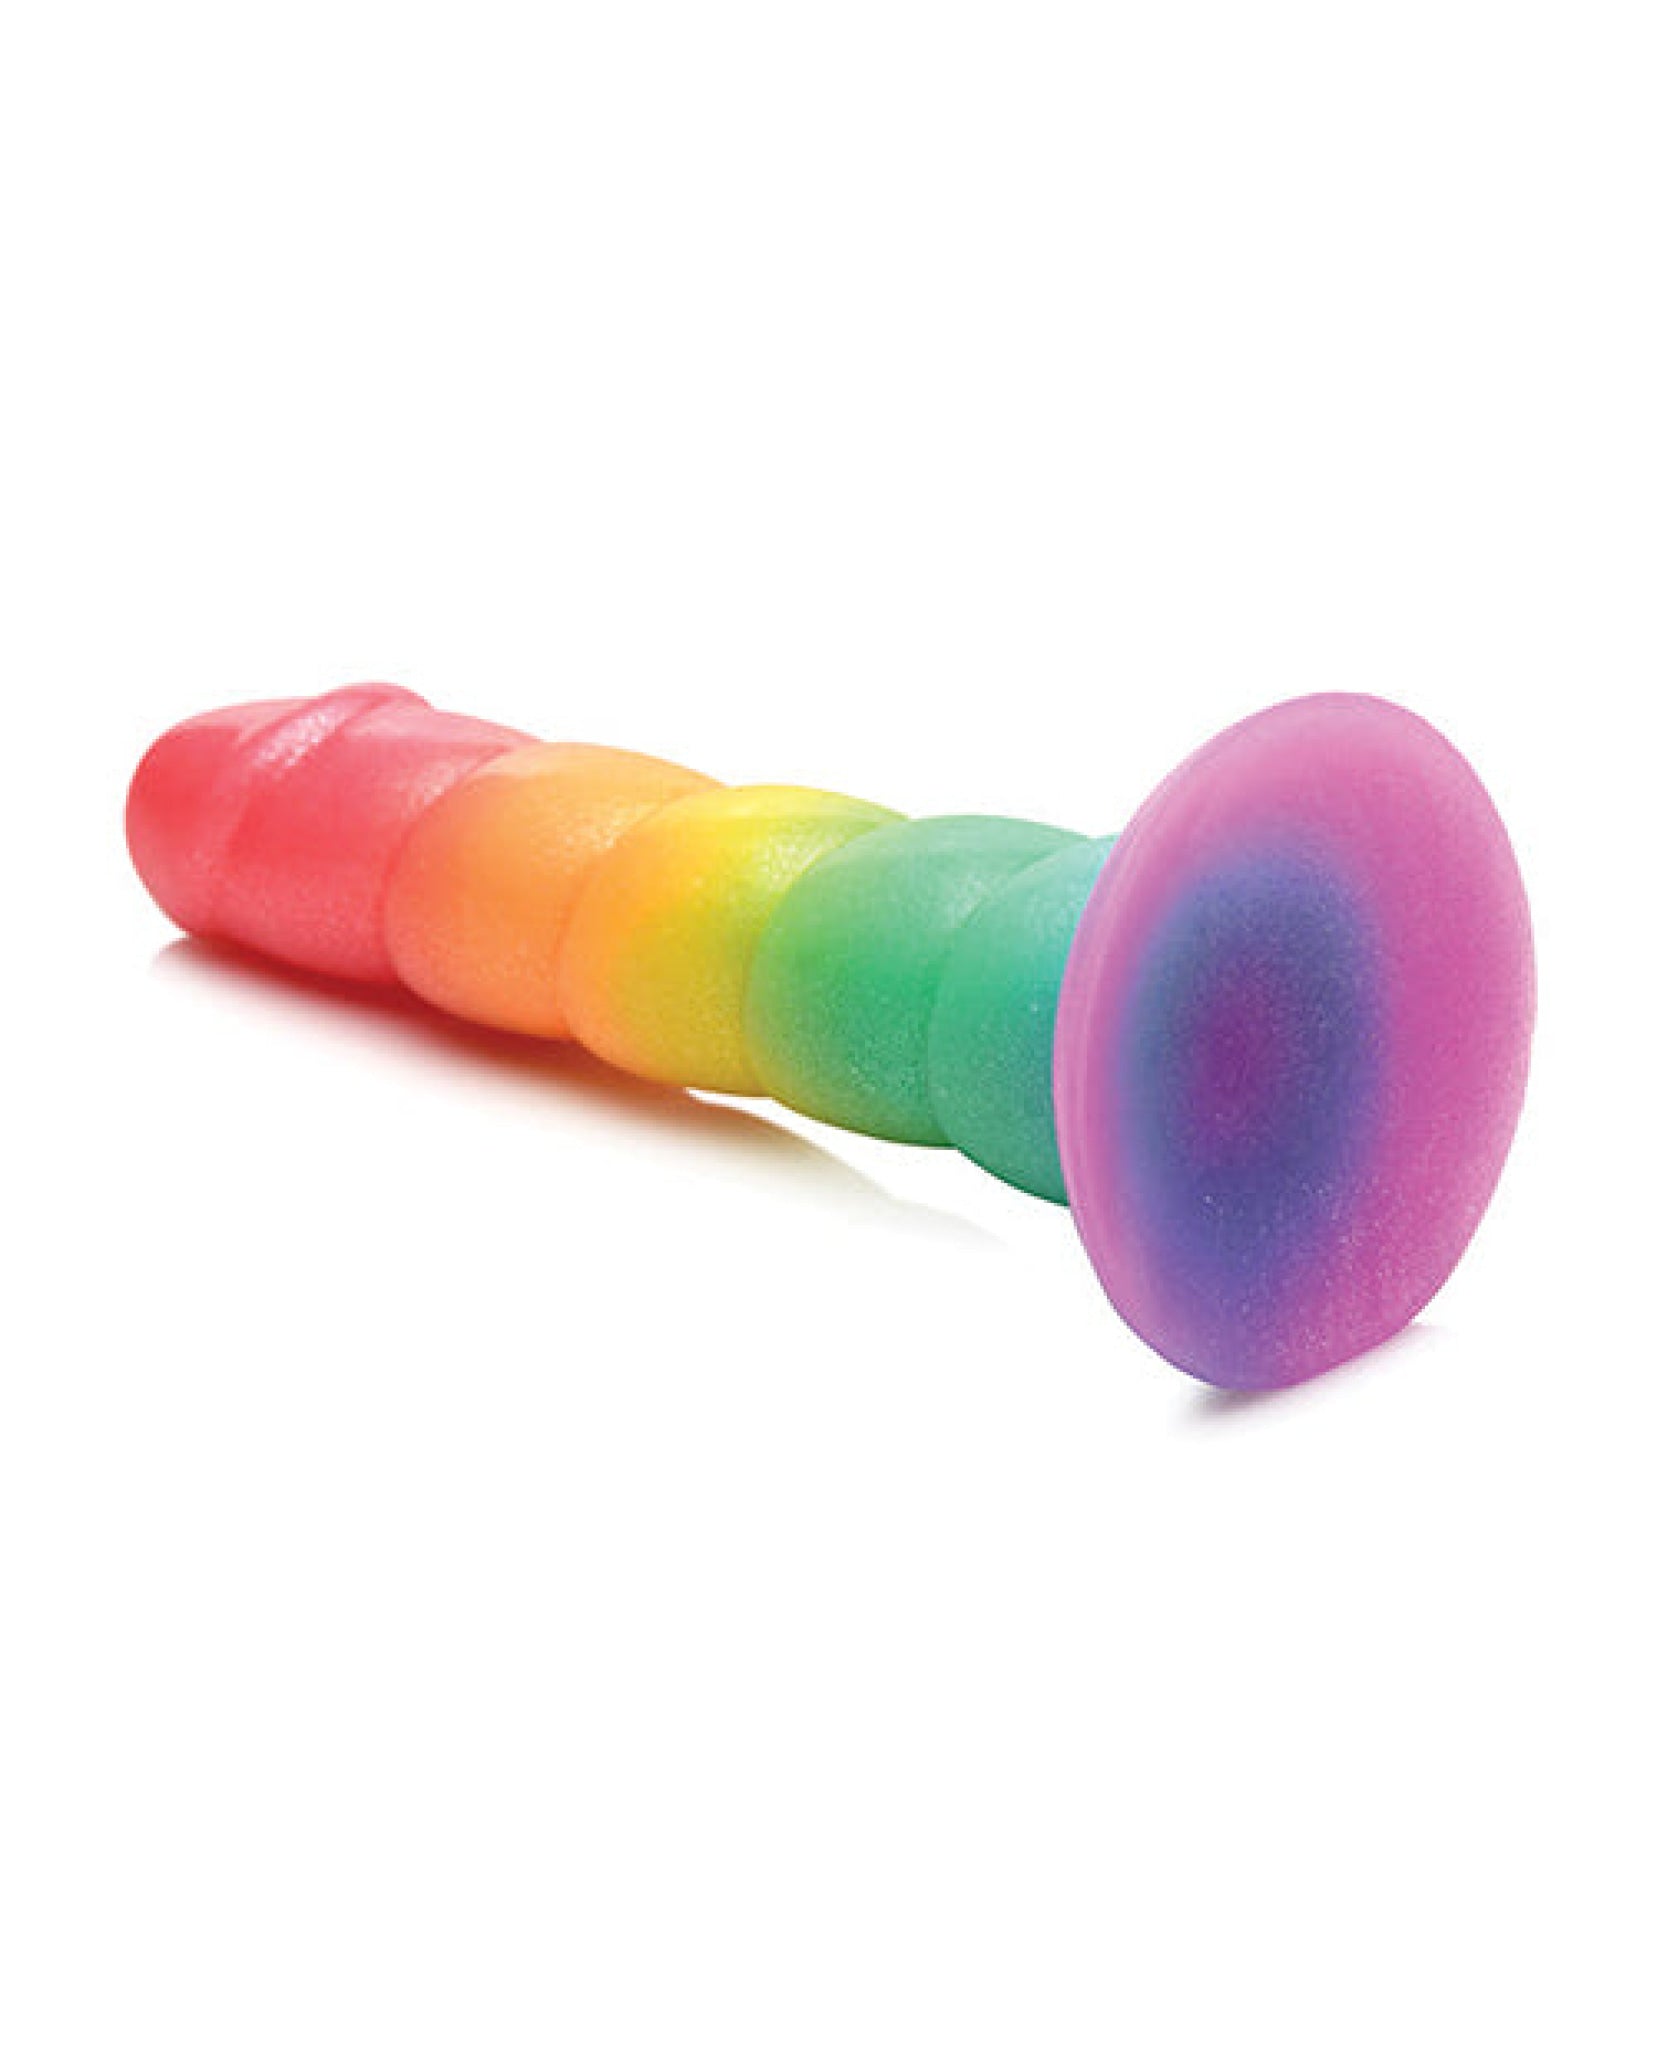 Curve Toys Simply Sweet 6.5" Rainbow Dildo Curve Toys